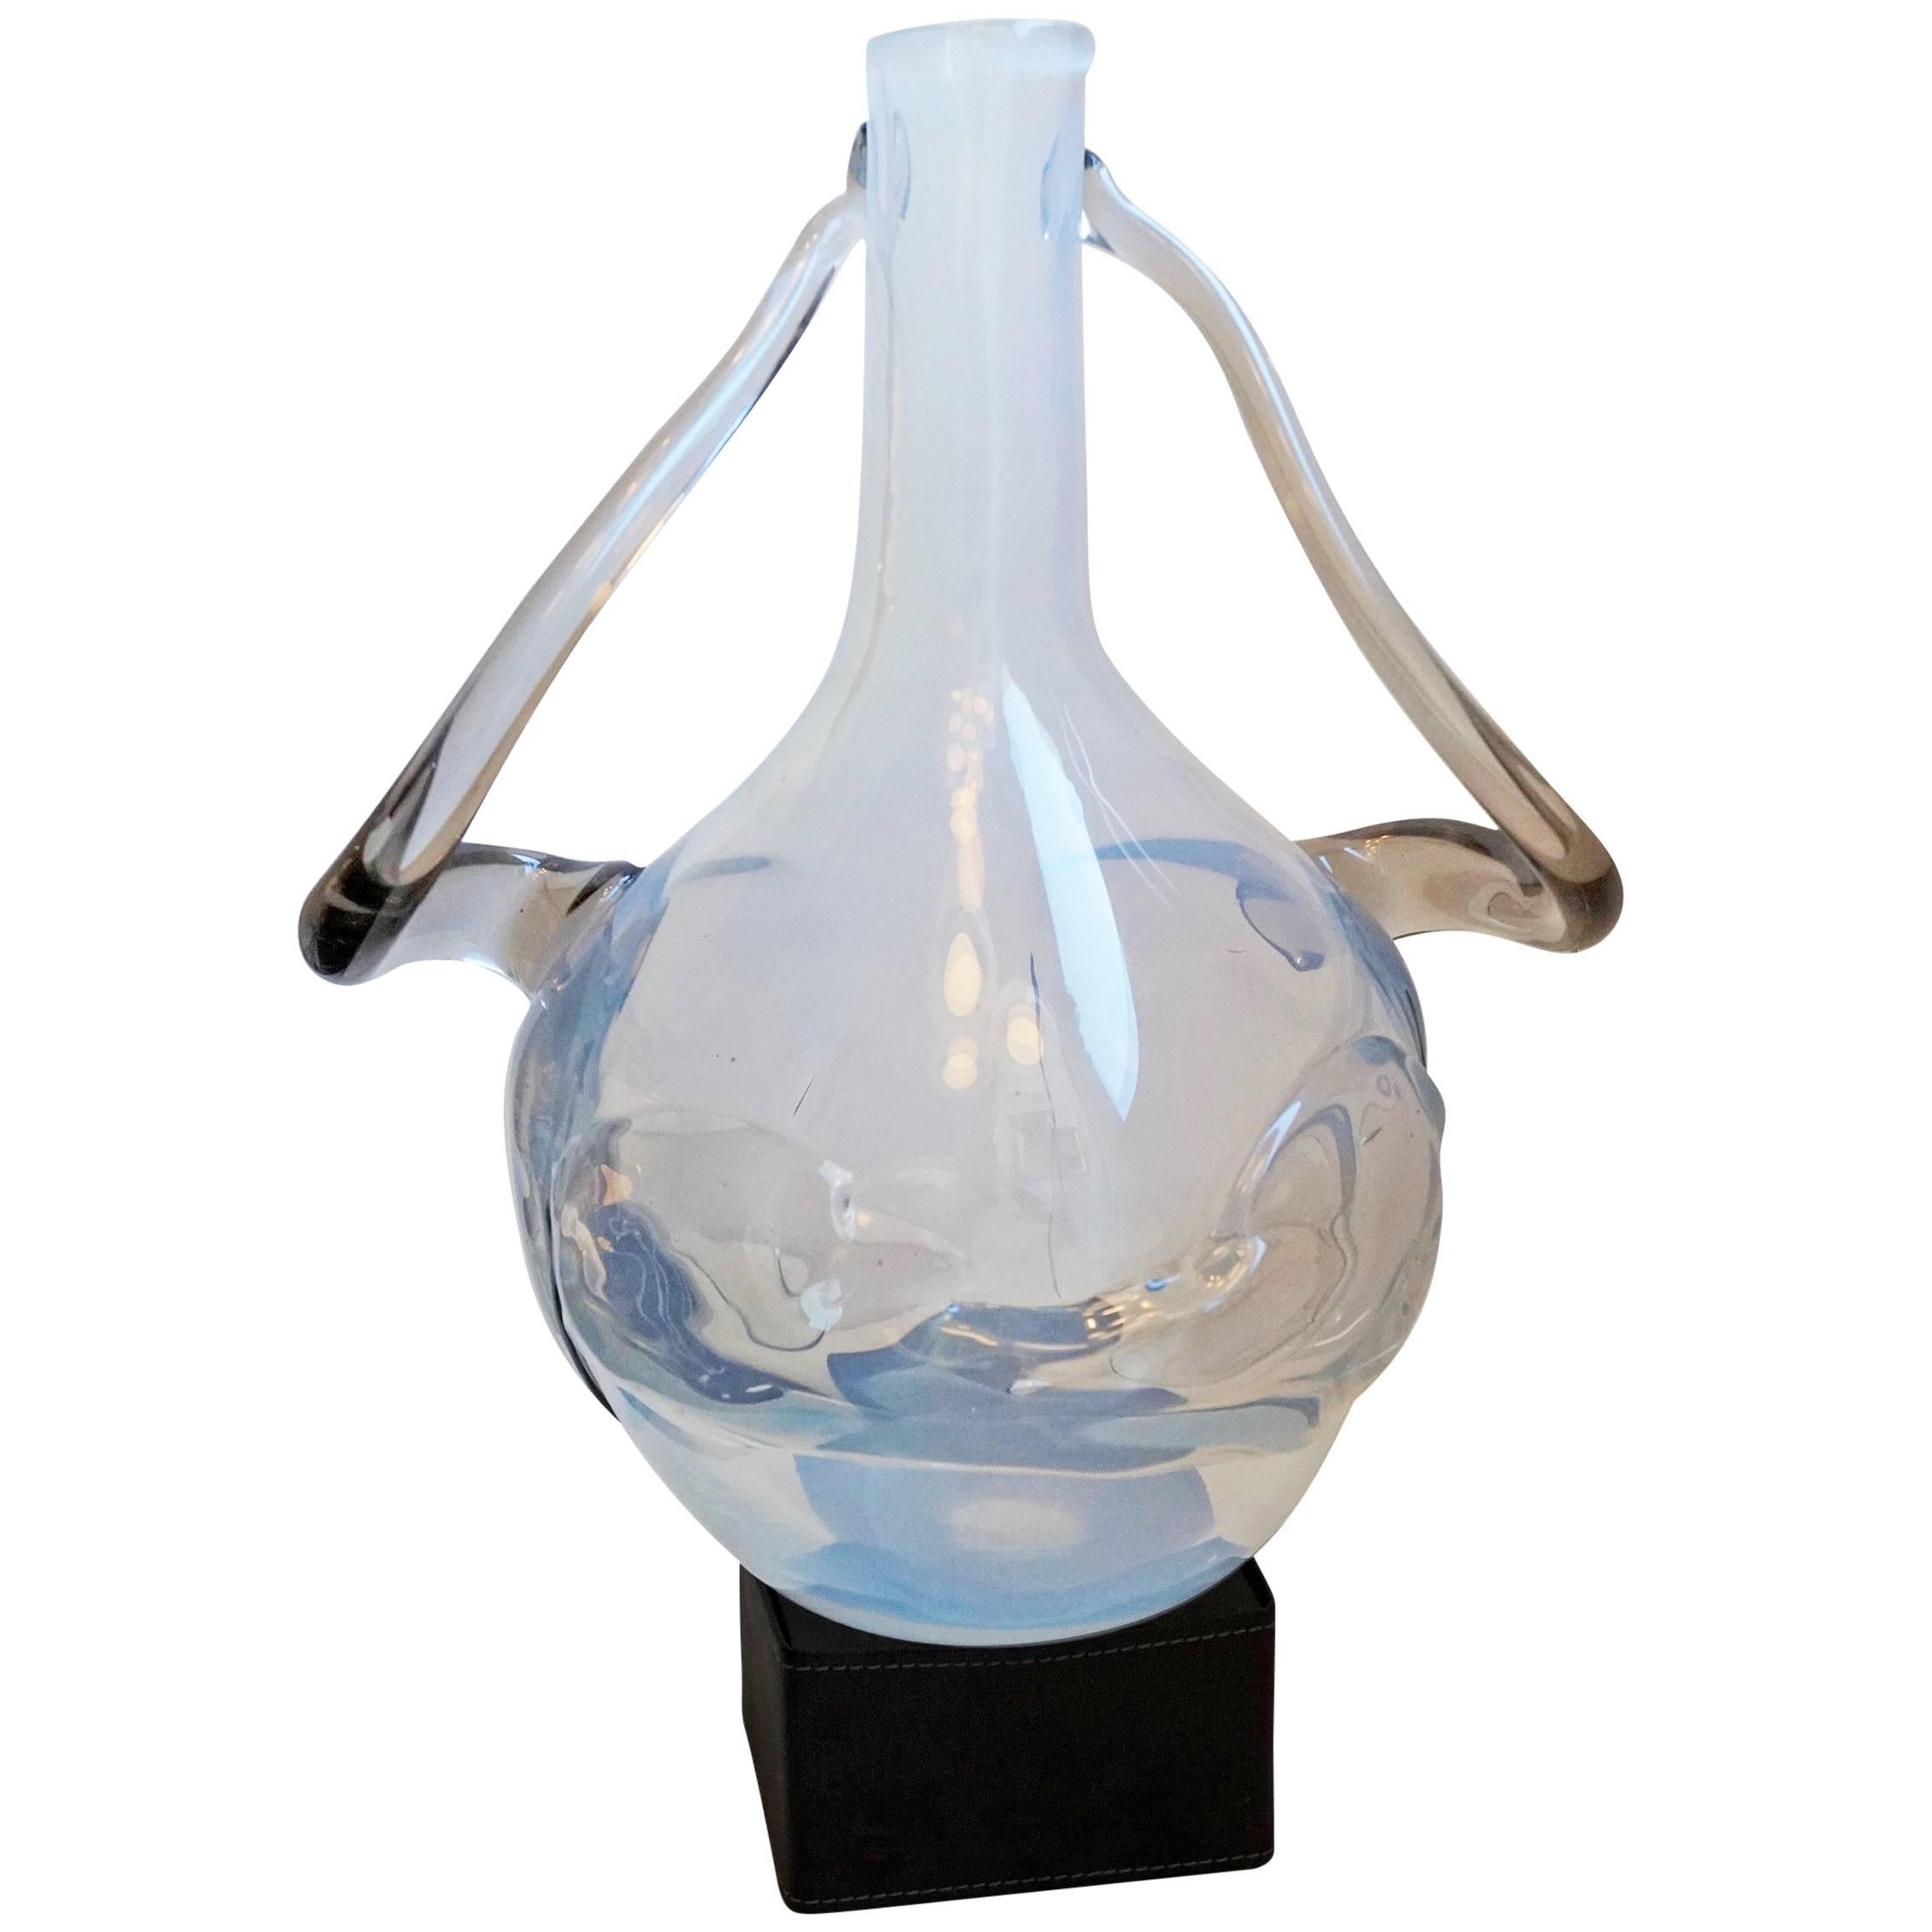 Claire Falkenstein 'Glass Sculpture, ' 6/20 for Salviati/Murano